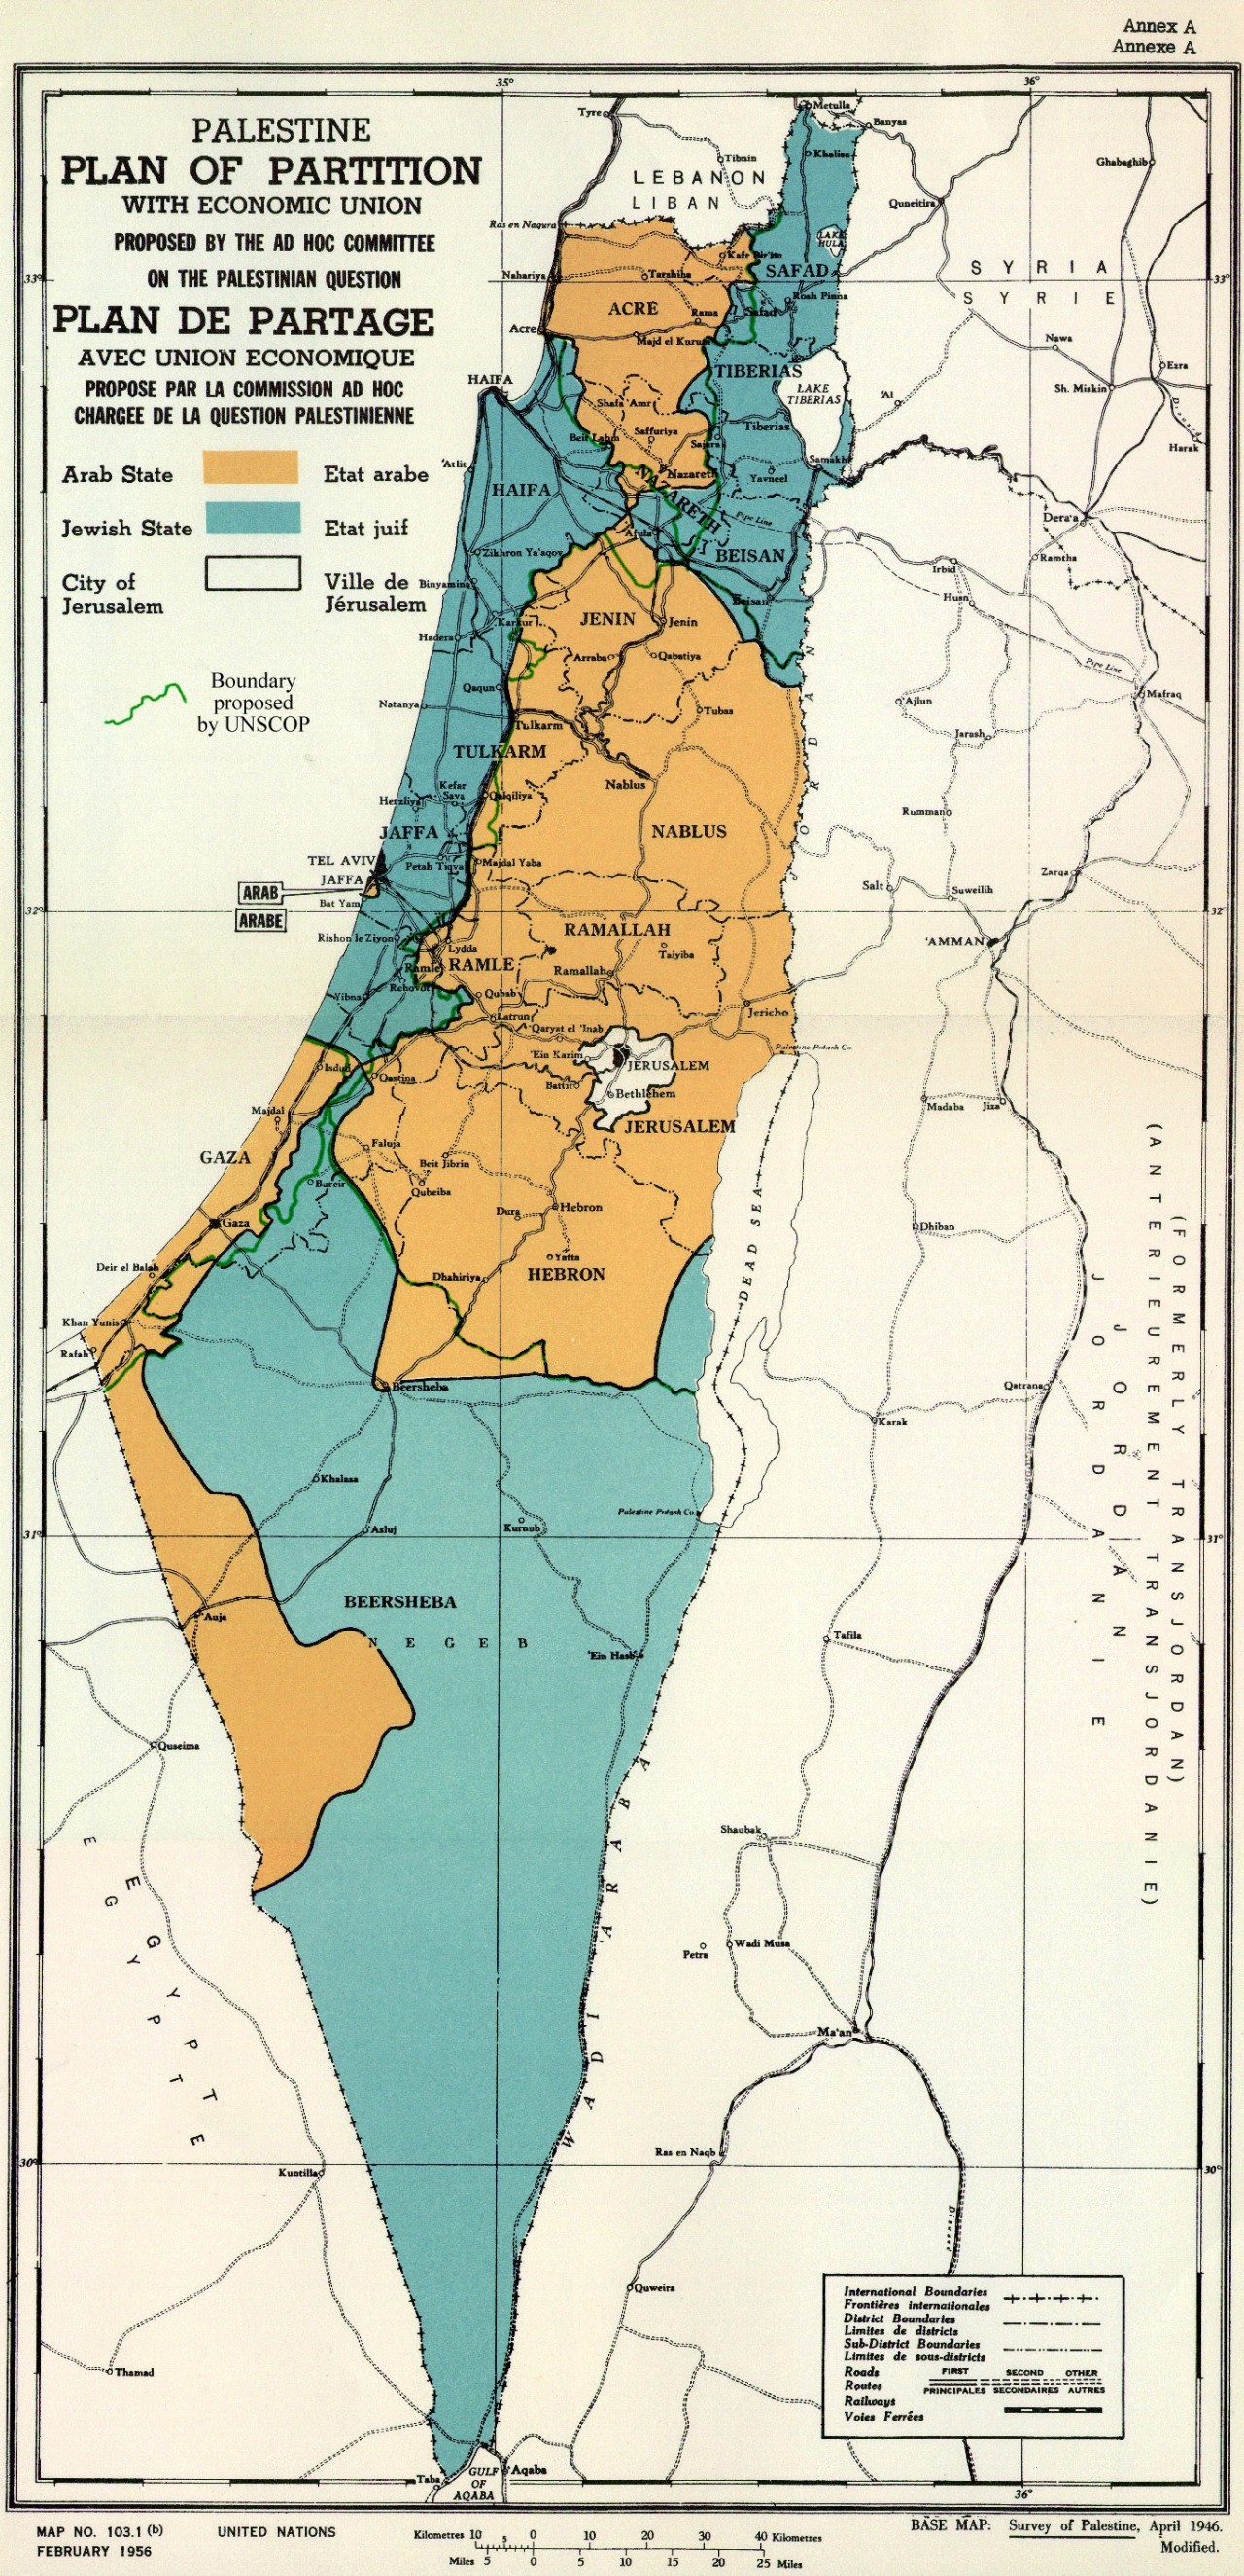 个阿拉伯国家和一个犹太国家,并在这块区域将过半的土地划分给犹太人